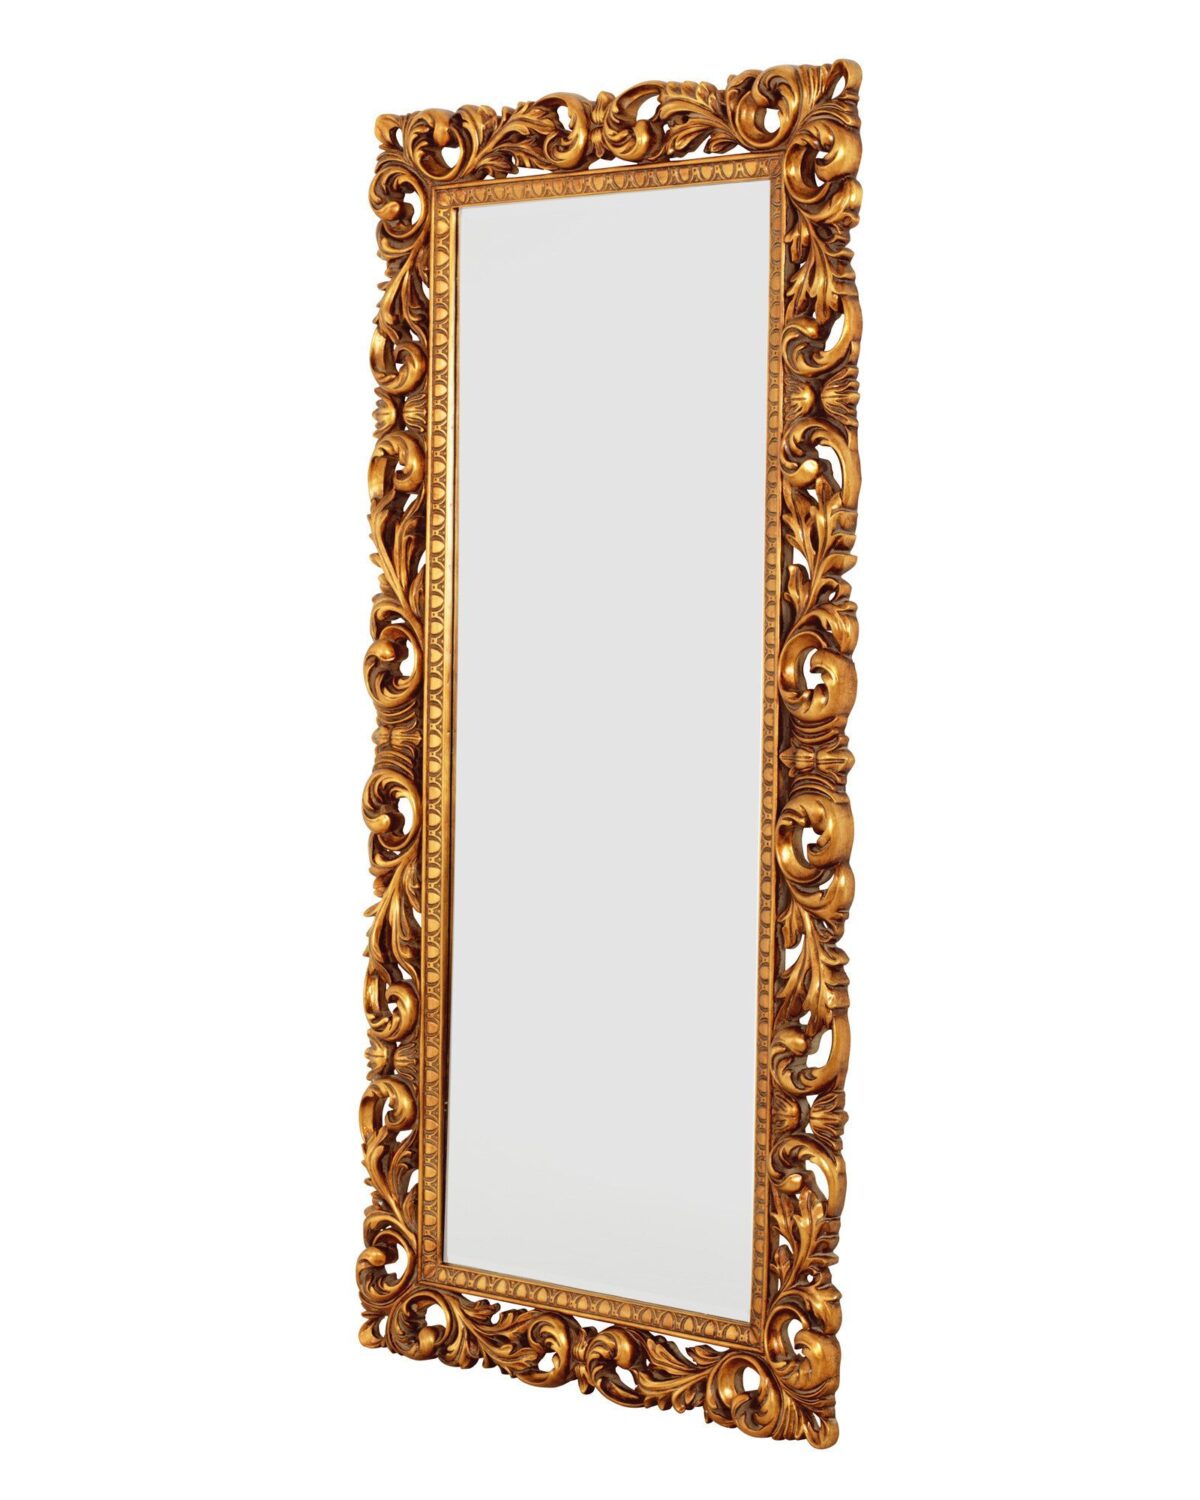 Прямоугольное золотое напольное зеркало "Кингстон" (на белом фоне, вид сбоку)